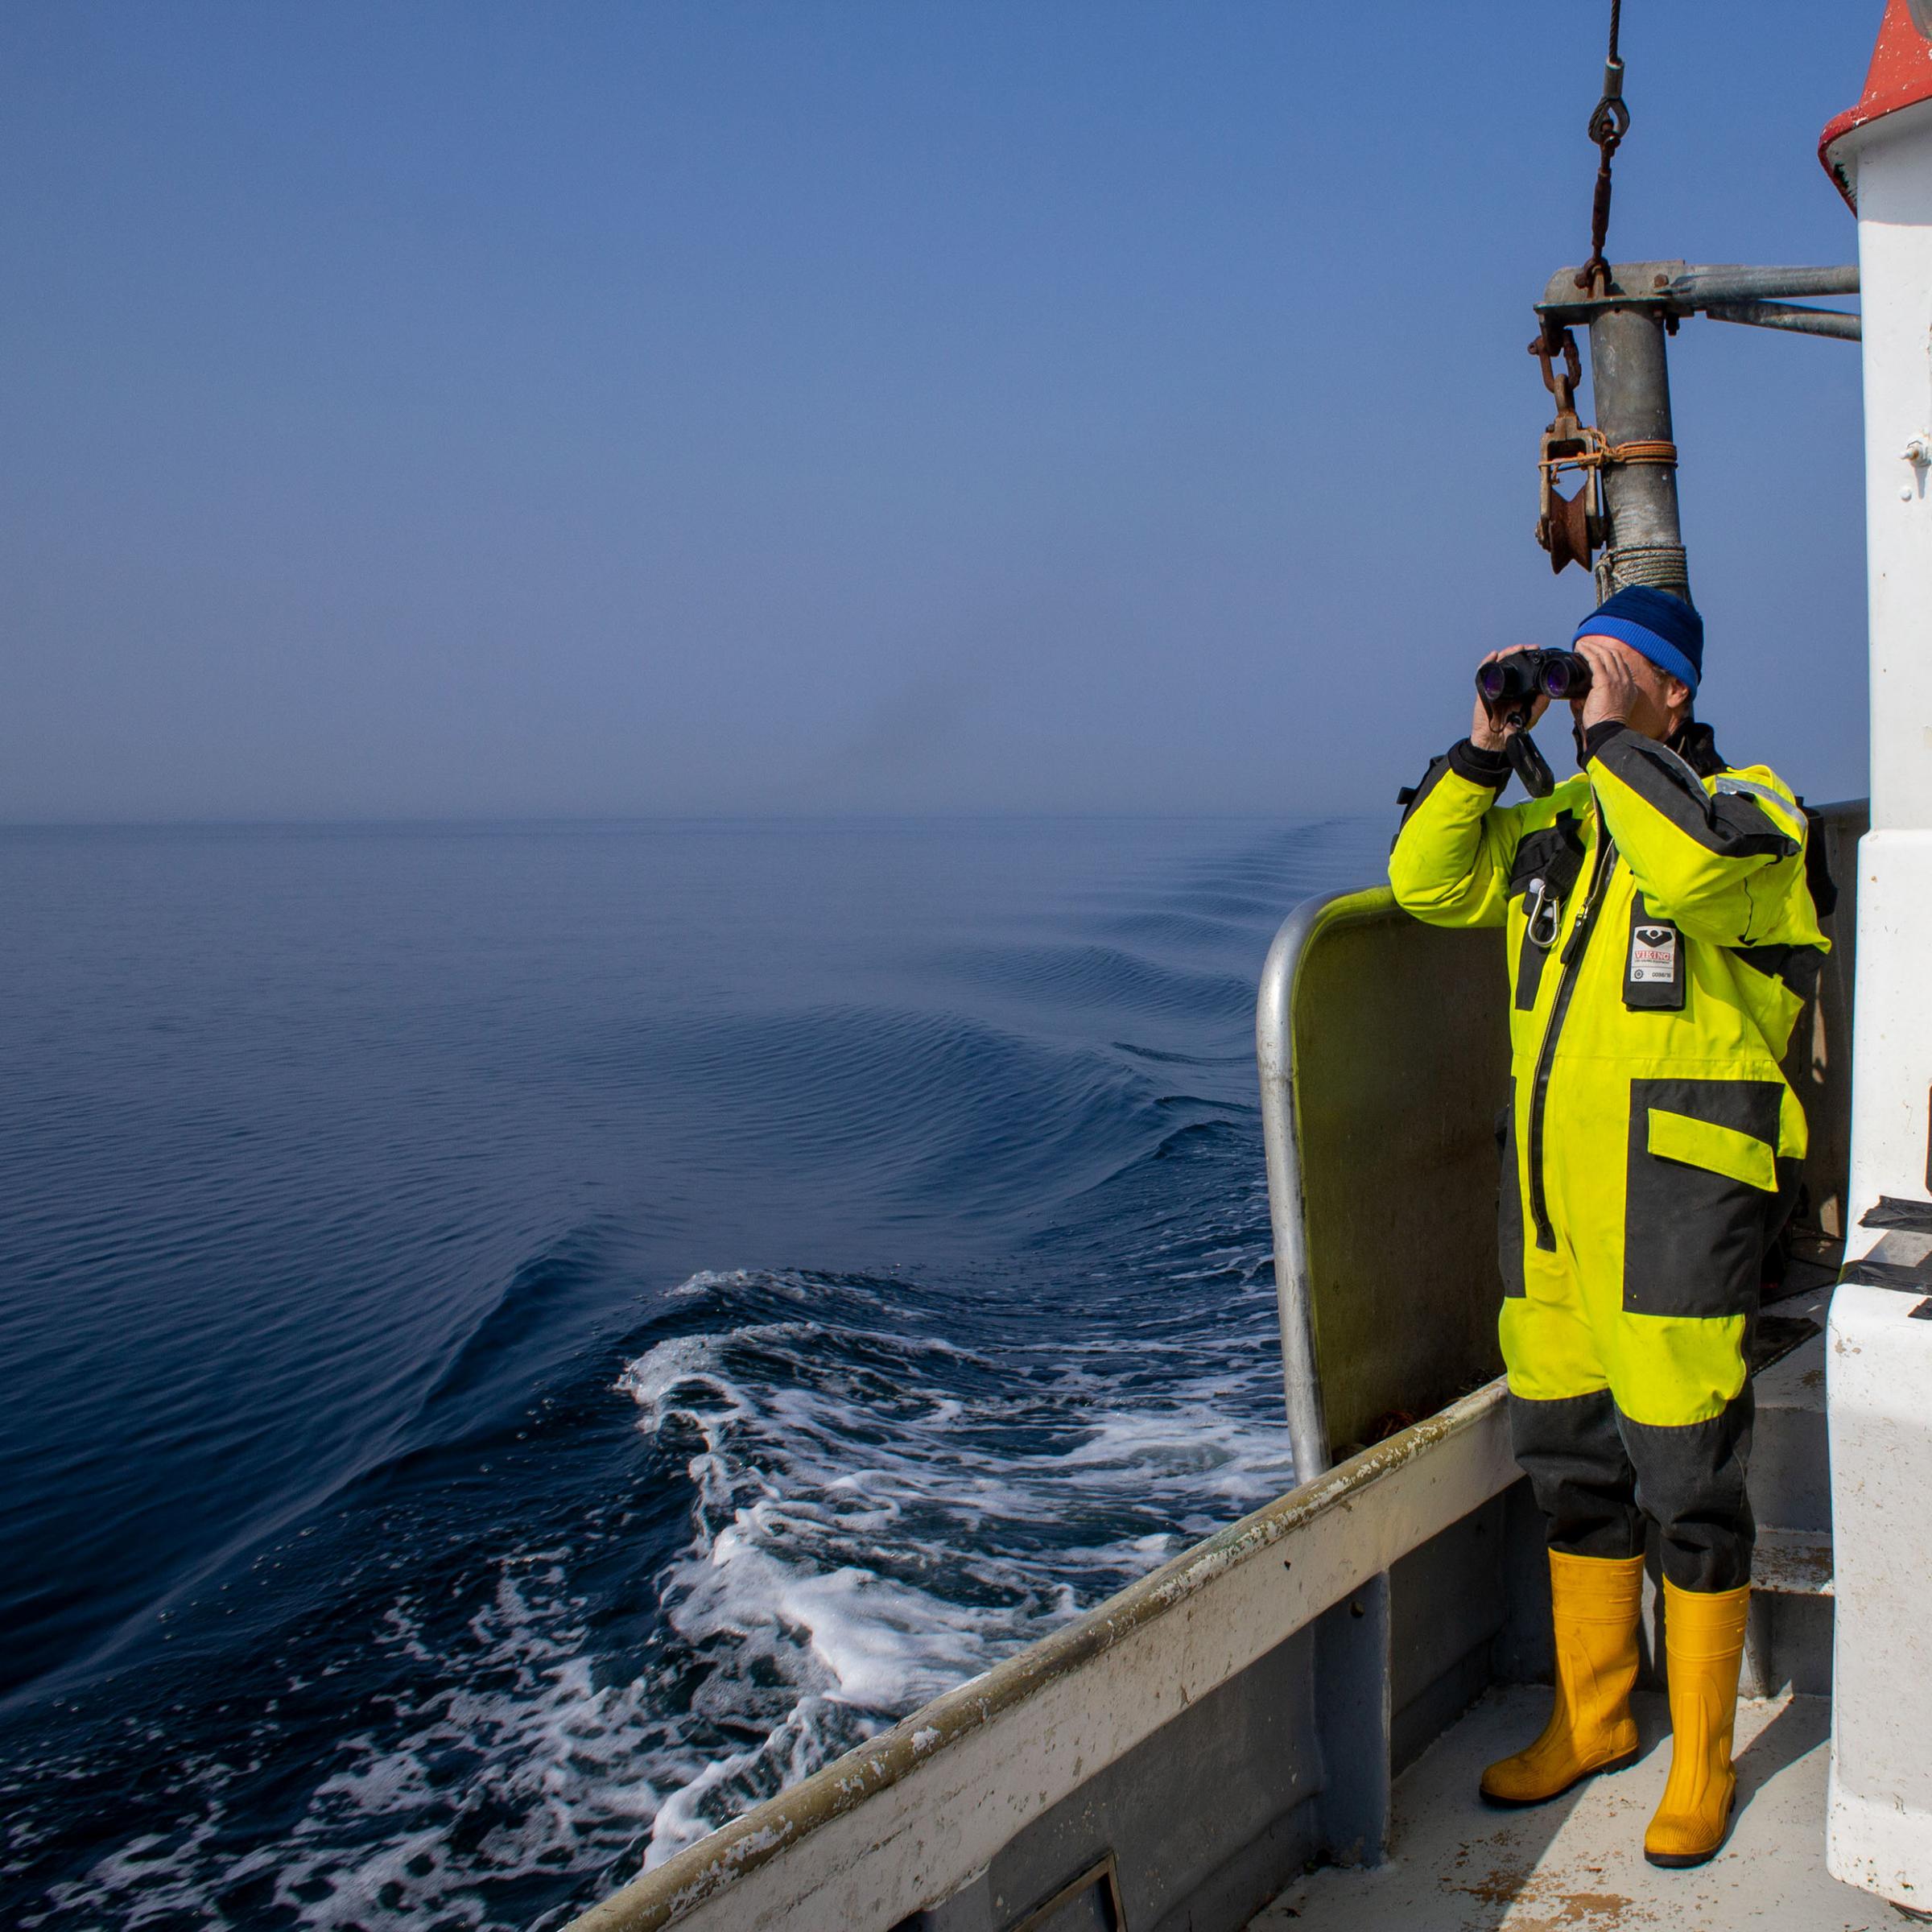 Ein Wissenschaftler steht an Deck des Fischerboots und schaut durch ein Fernglas auf die sehr ruhige Ostsee.